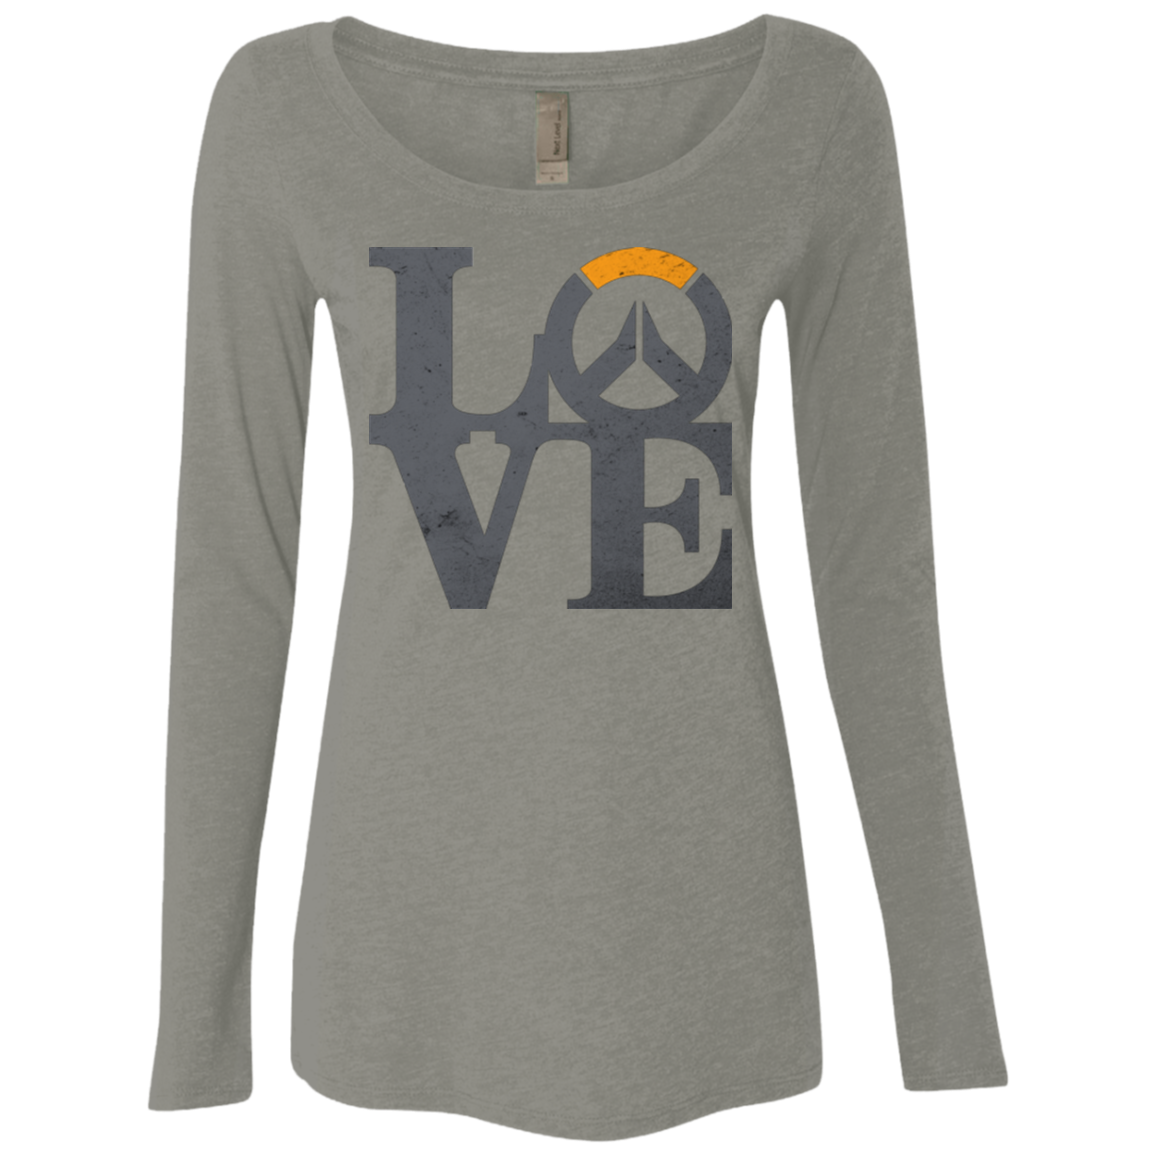 Loverwatch Women's Triblend Long Sleeve Shirt